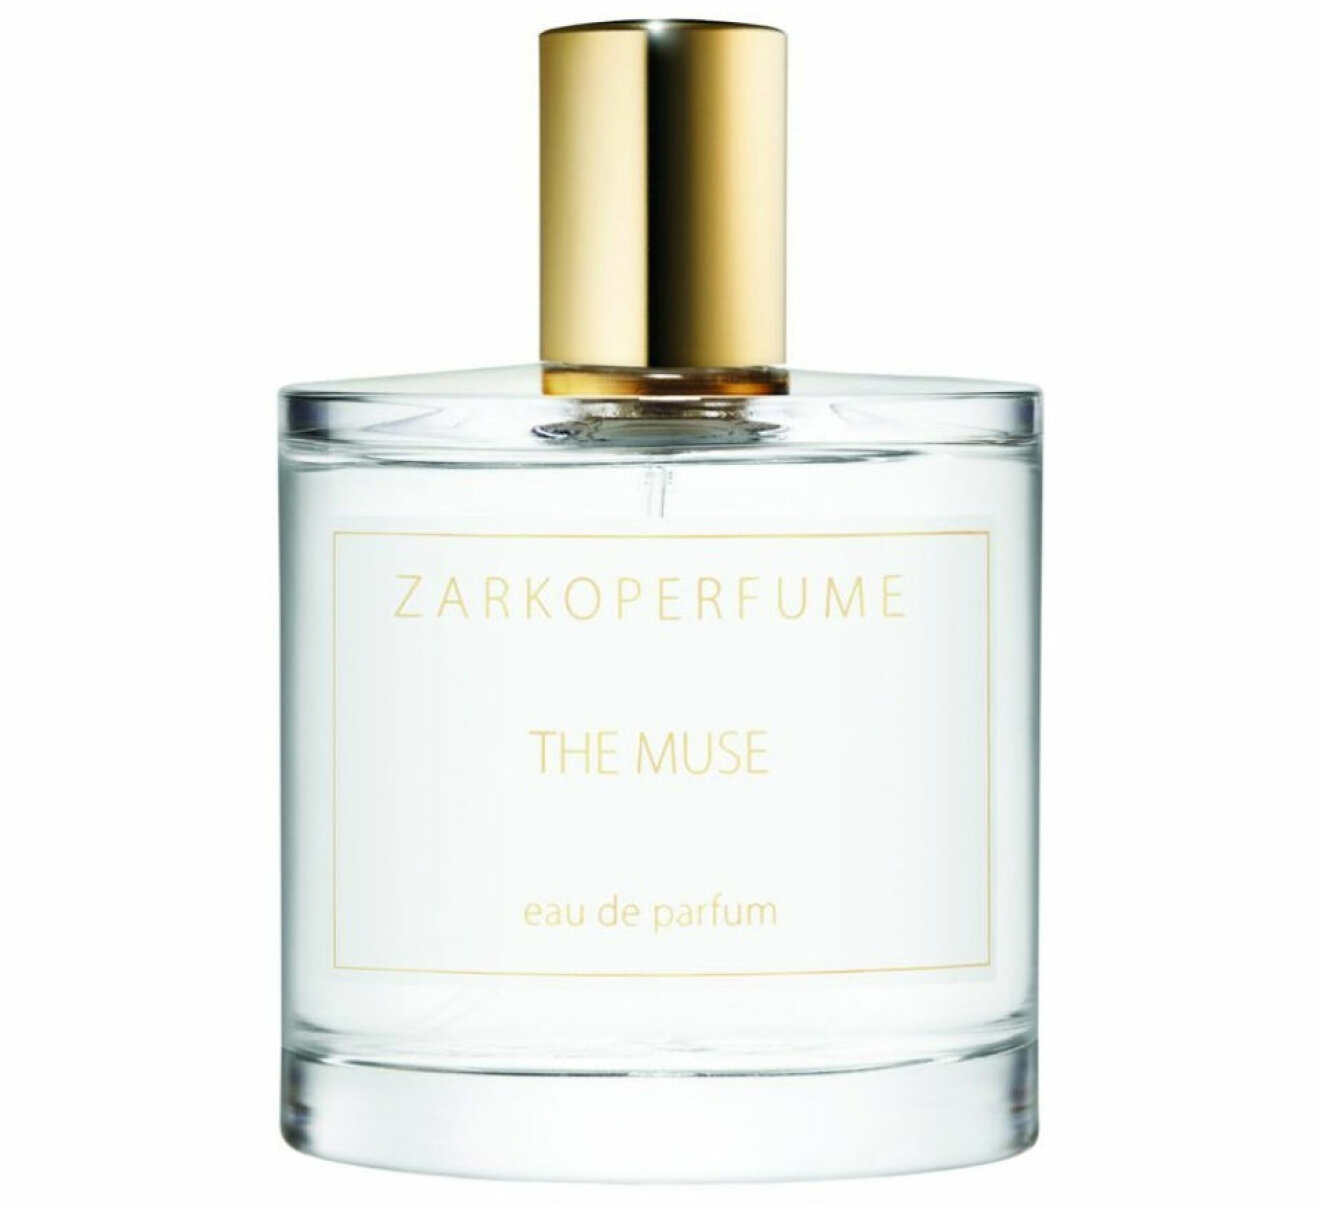 zarkoperfume the muse eau de parfum